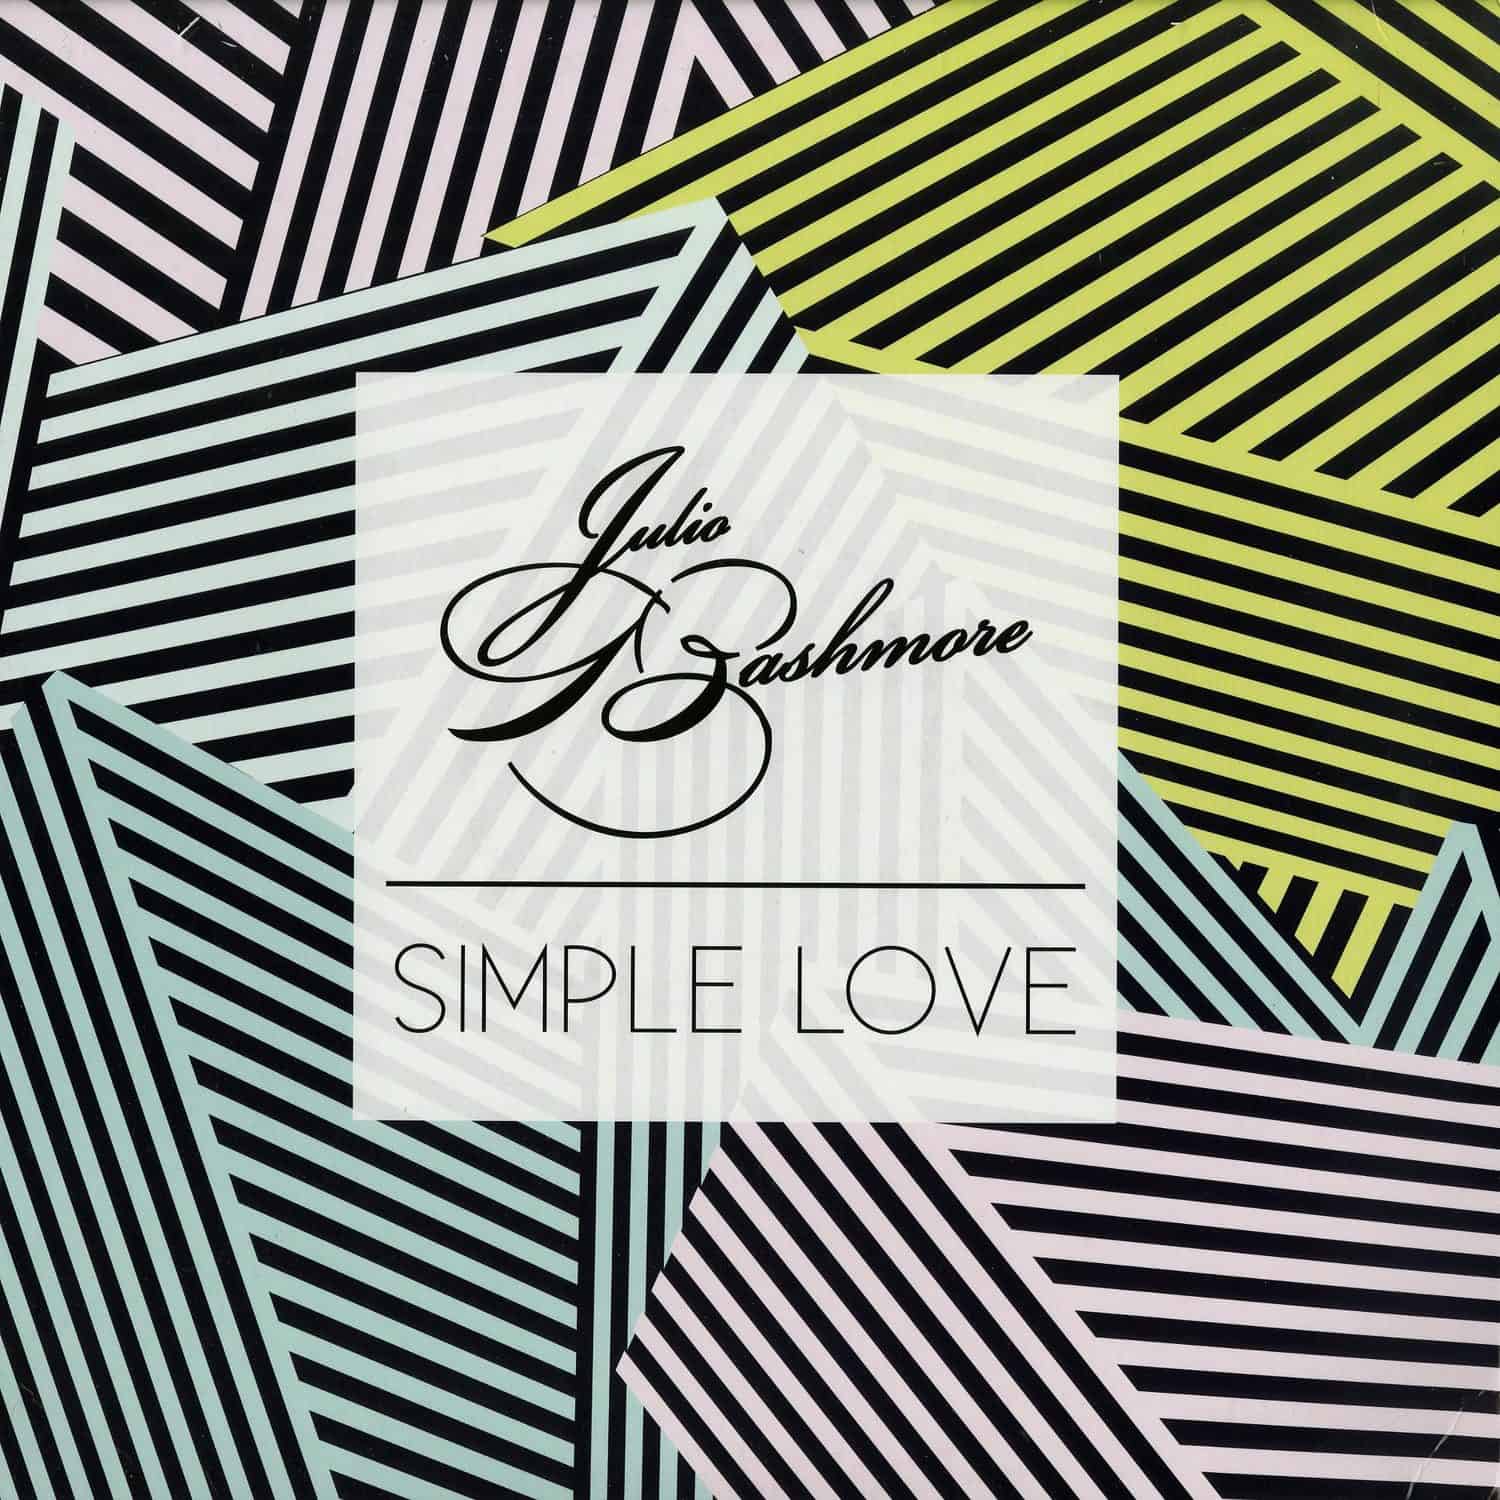 Julio Bashmore - SIMPLE LOVE